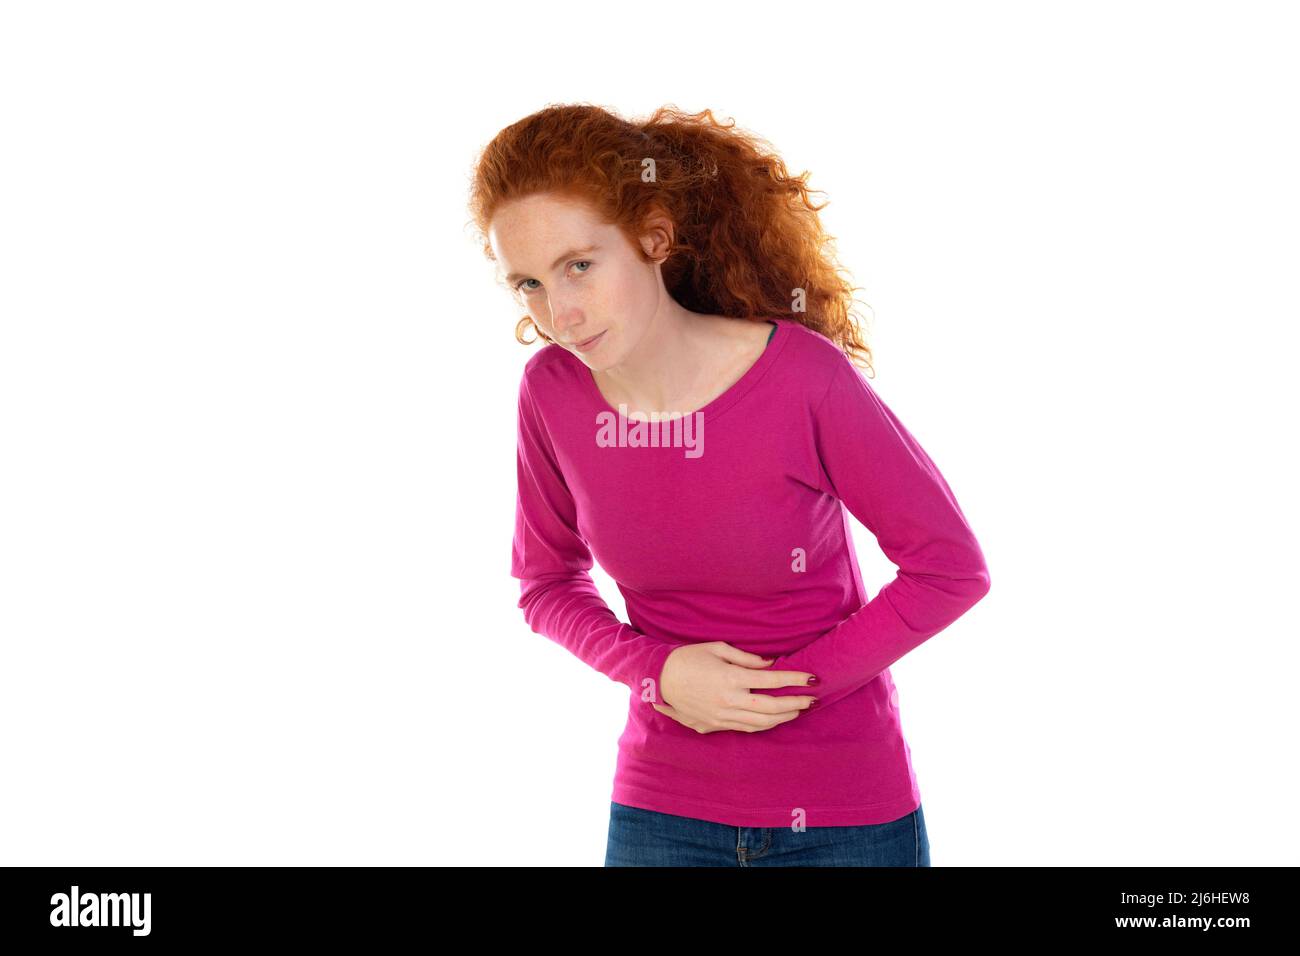 Frau trägt Casual T-Shirt auf dem Hintergrund leiden Bauchschmerzen mit schmerzhafter Grimasse, Gefühl plötzlichen Periode Krämpfe, Gynäkologie Konzept isoliert auf w Stockfoto